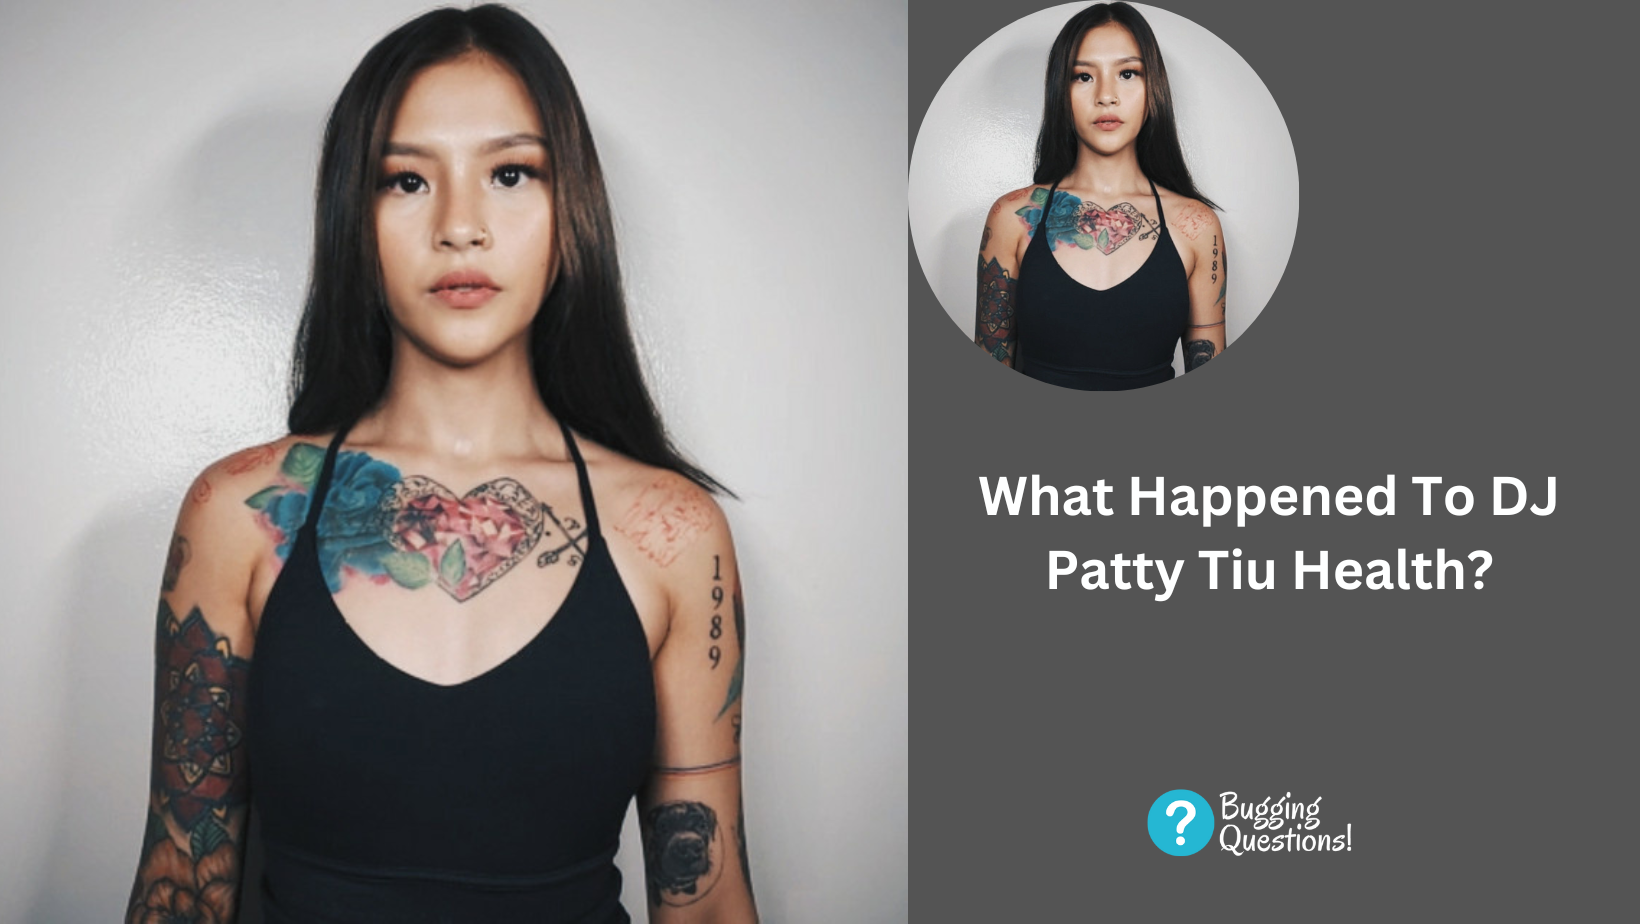 What Happened To DJ Patty Tiu Health?